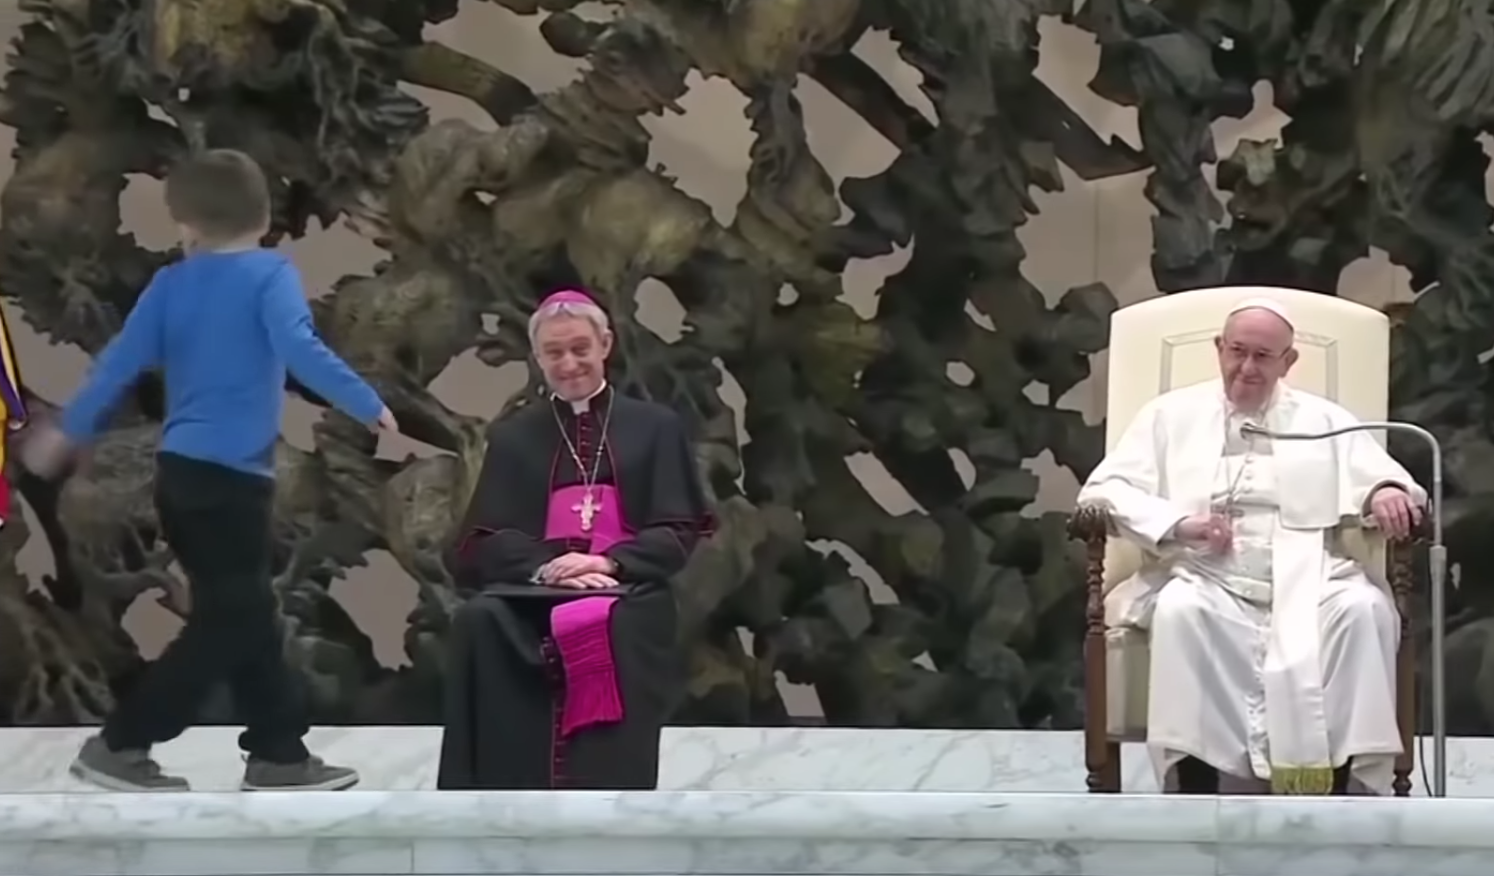 Elunta a pápa beszédet a kisfiú, felmászott mellé a pódiumra bohóckodni kicsit